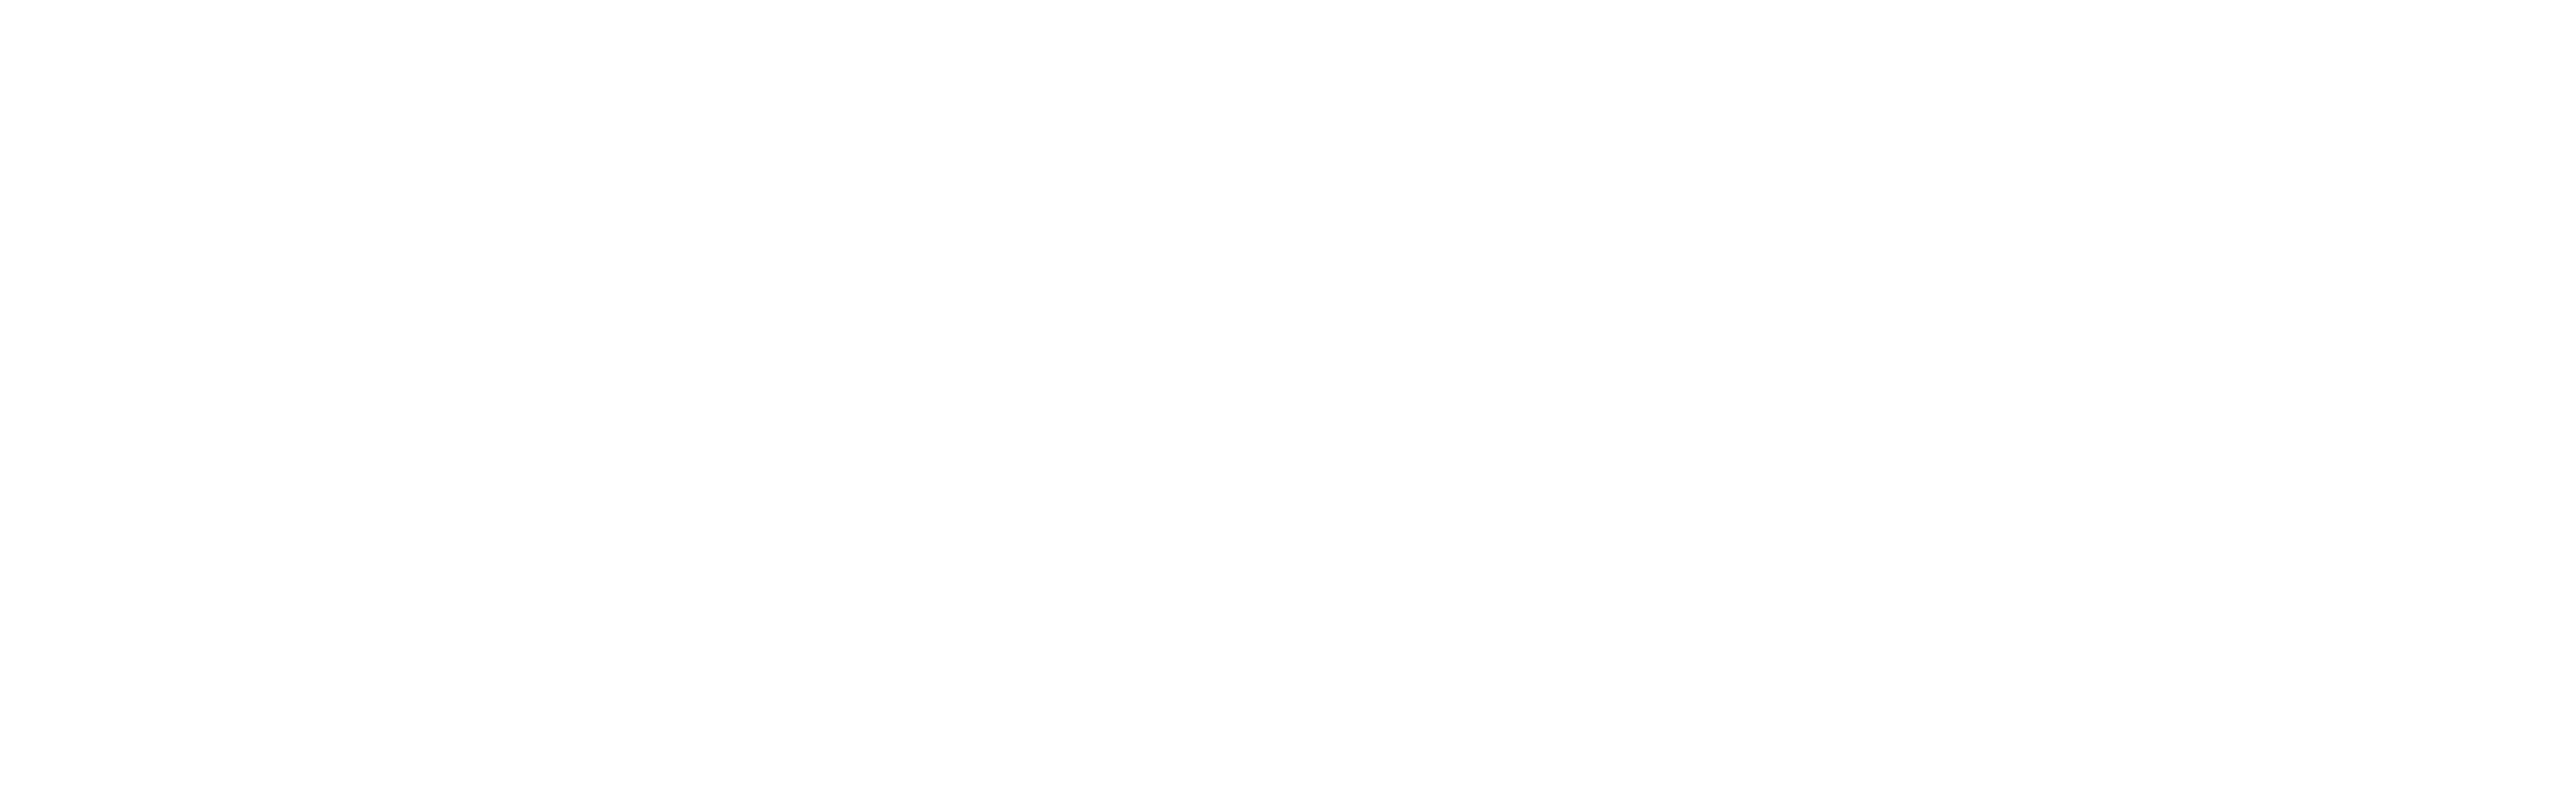 logo-pulsalys